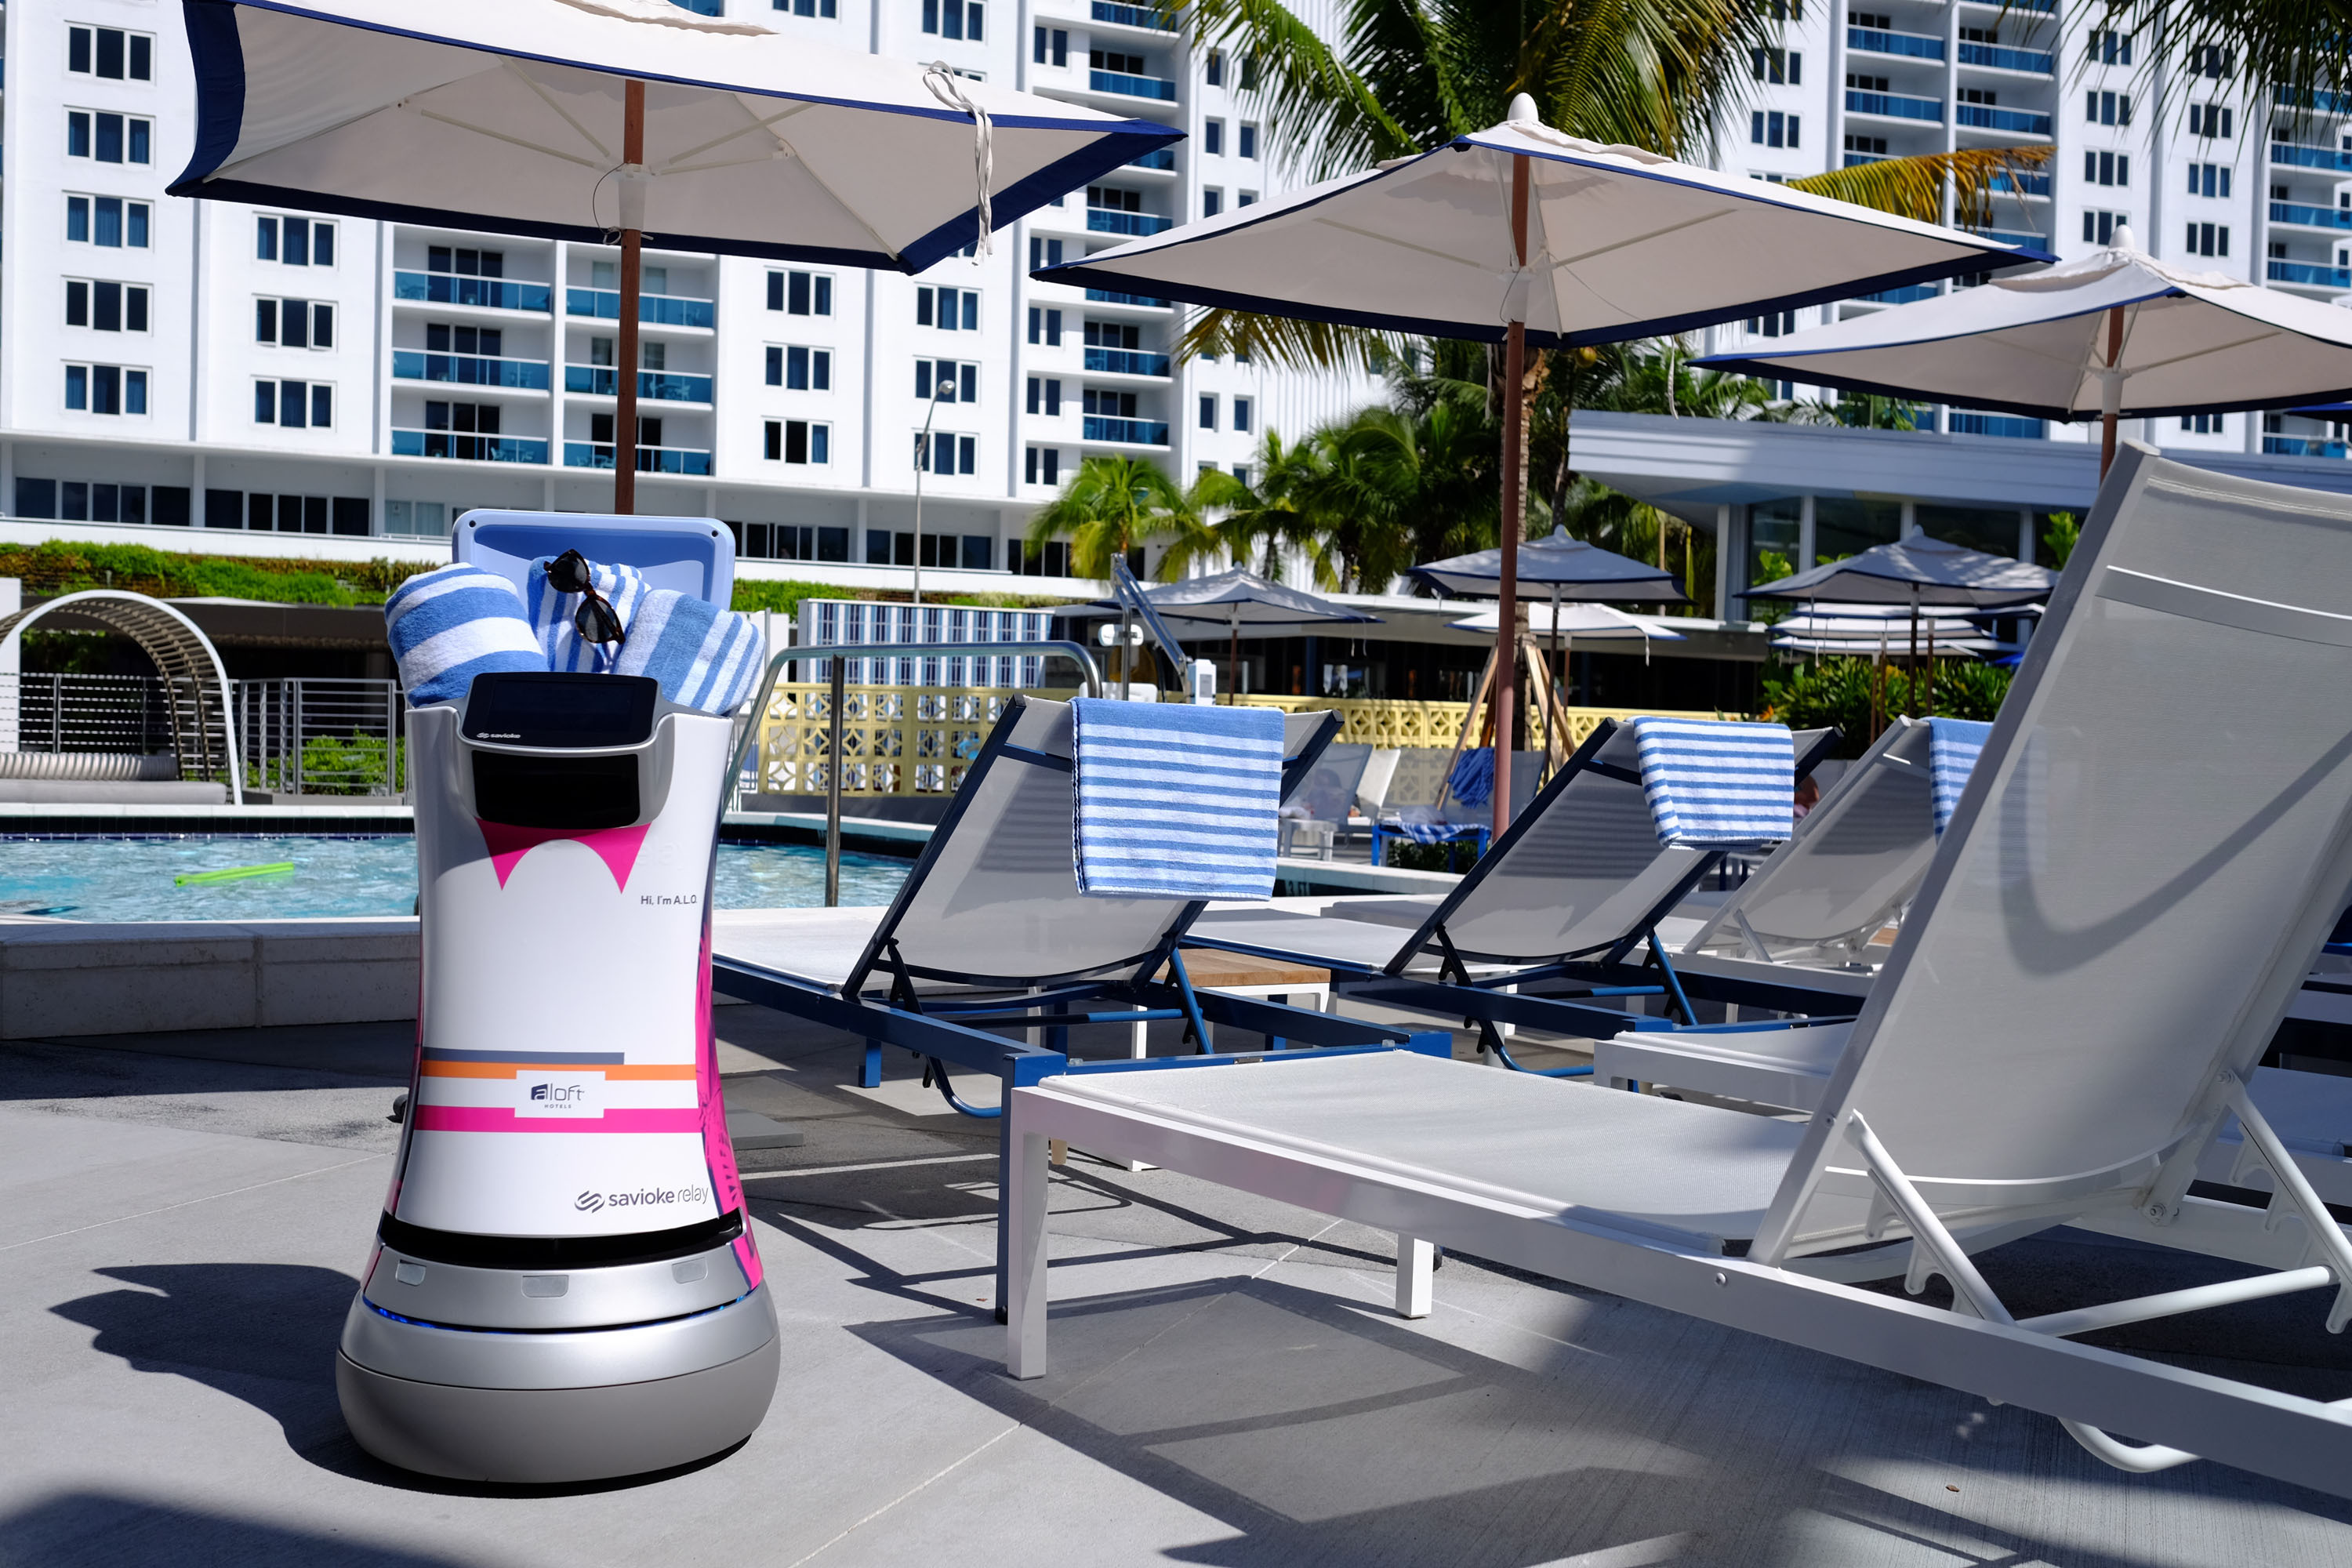 Neuer Vollzeit-Mitarbeiter in Aloft Hotel: Service-Roboter "Botlr" bringt Snacks, Amenities, Handtücher und noch mehr schnurstracks zu den Gästen (Foto: Starwood Hotels/Aloft Hotel Miami South Beach)